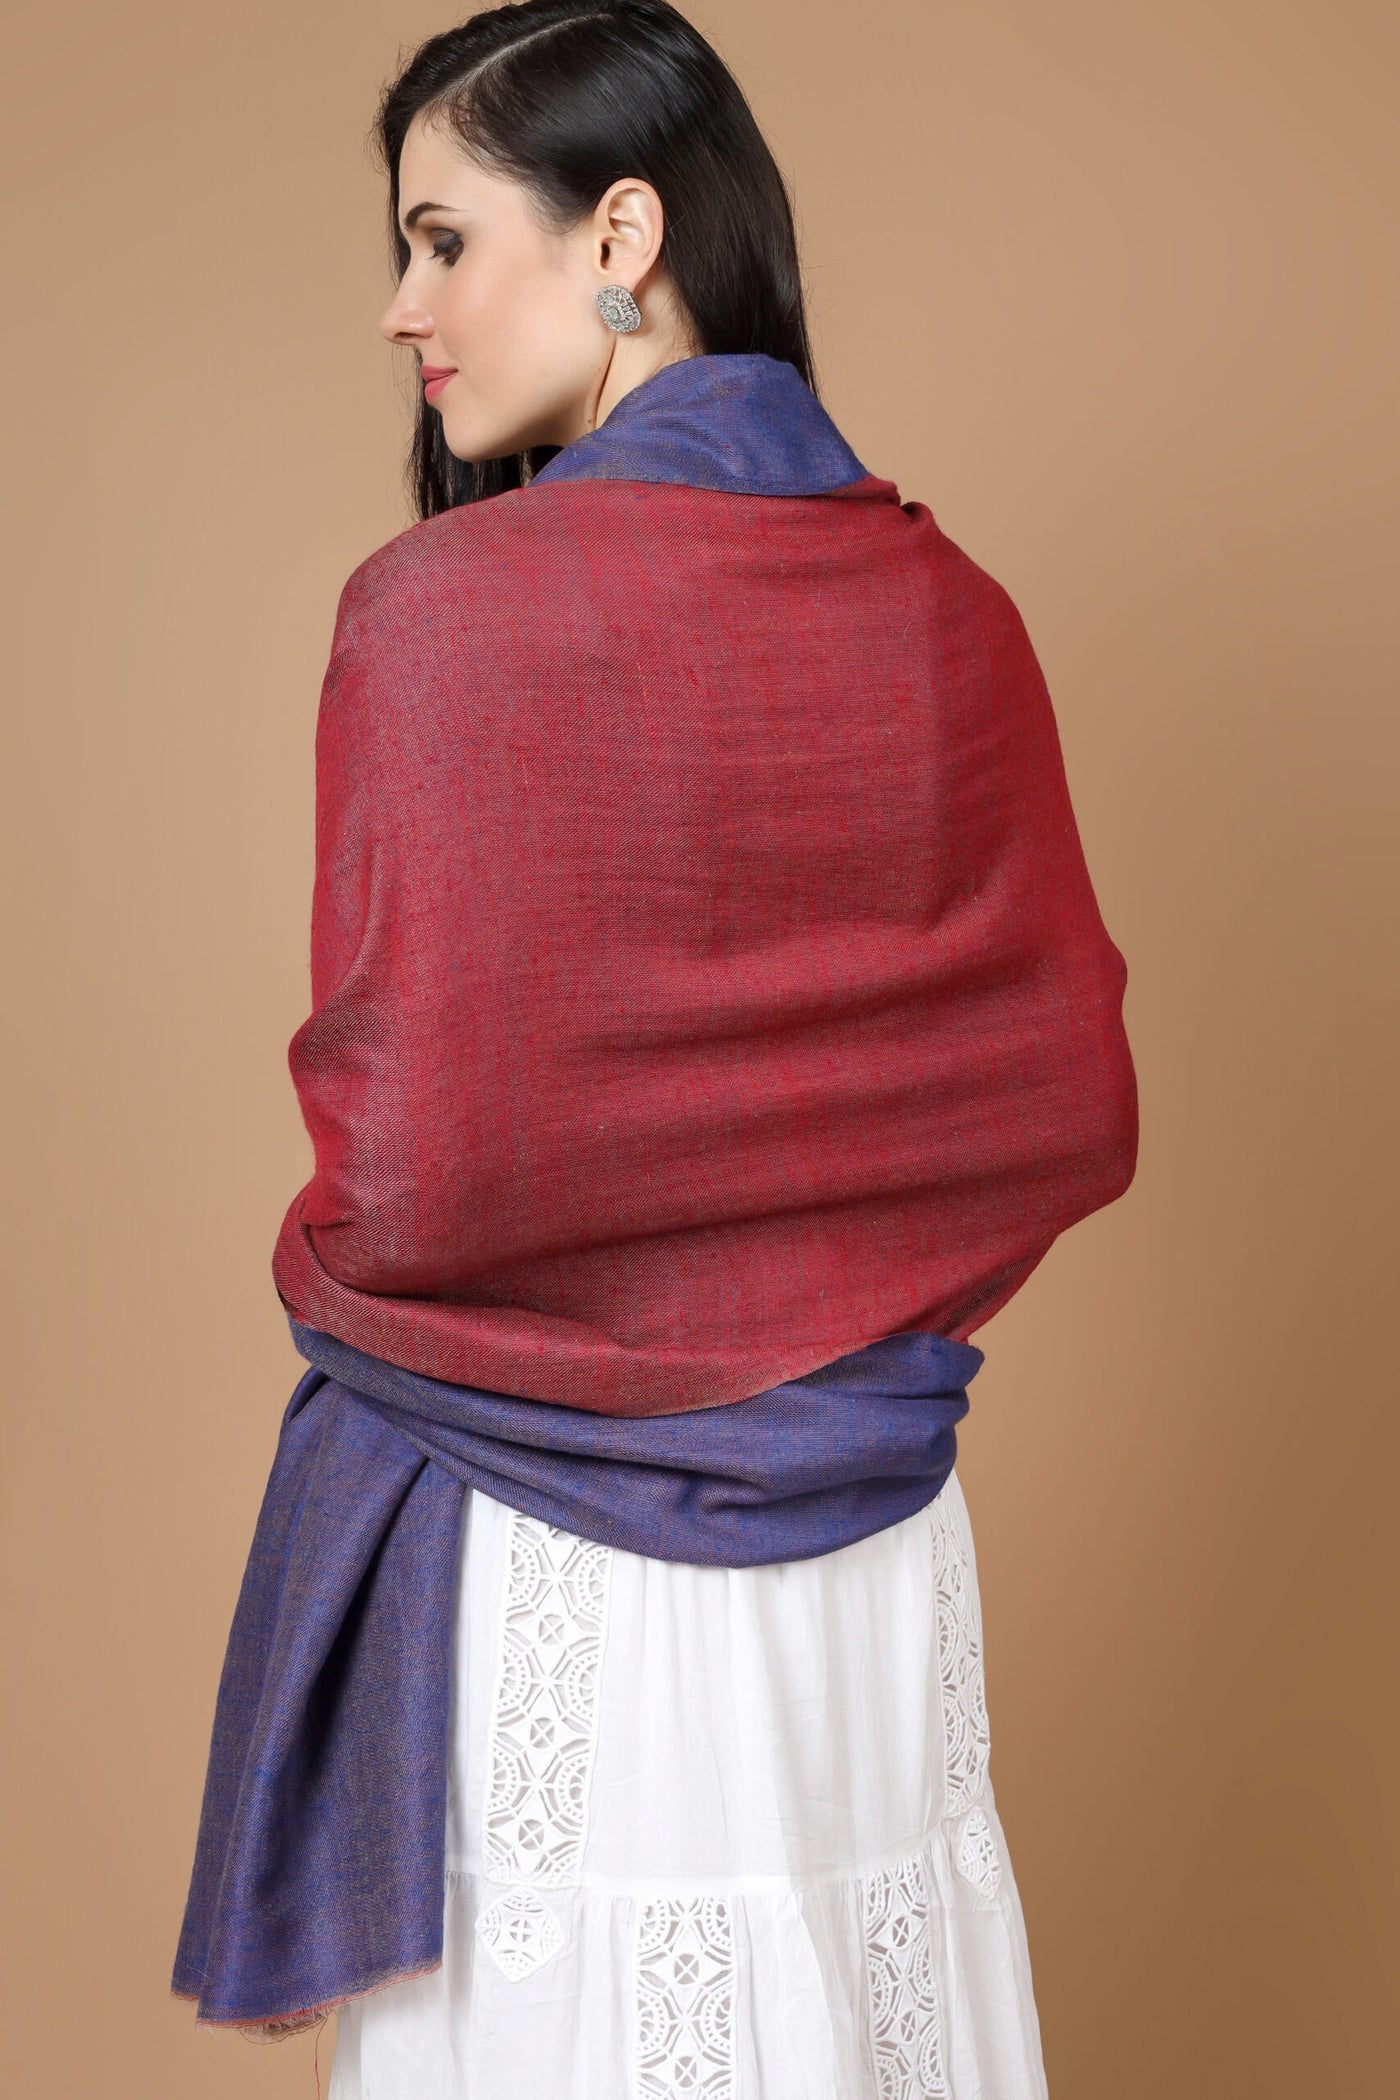 Reversible pashmina shawl